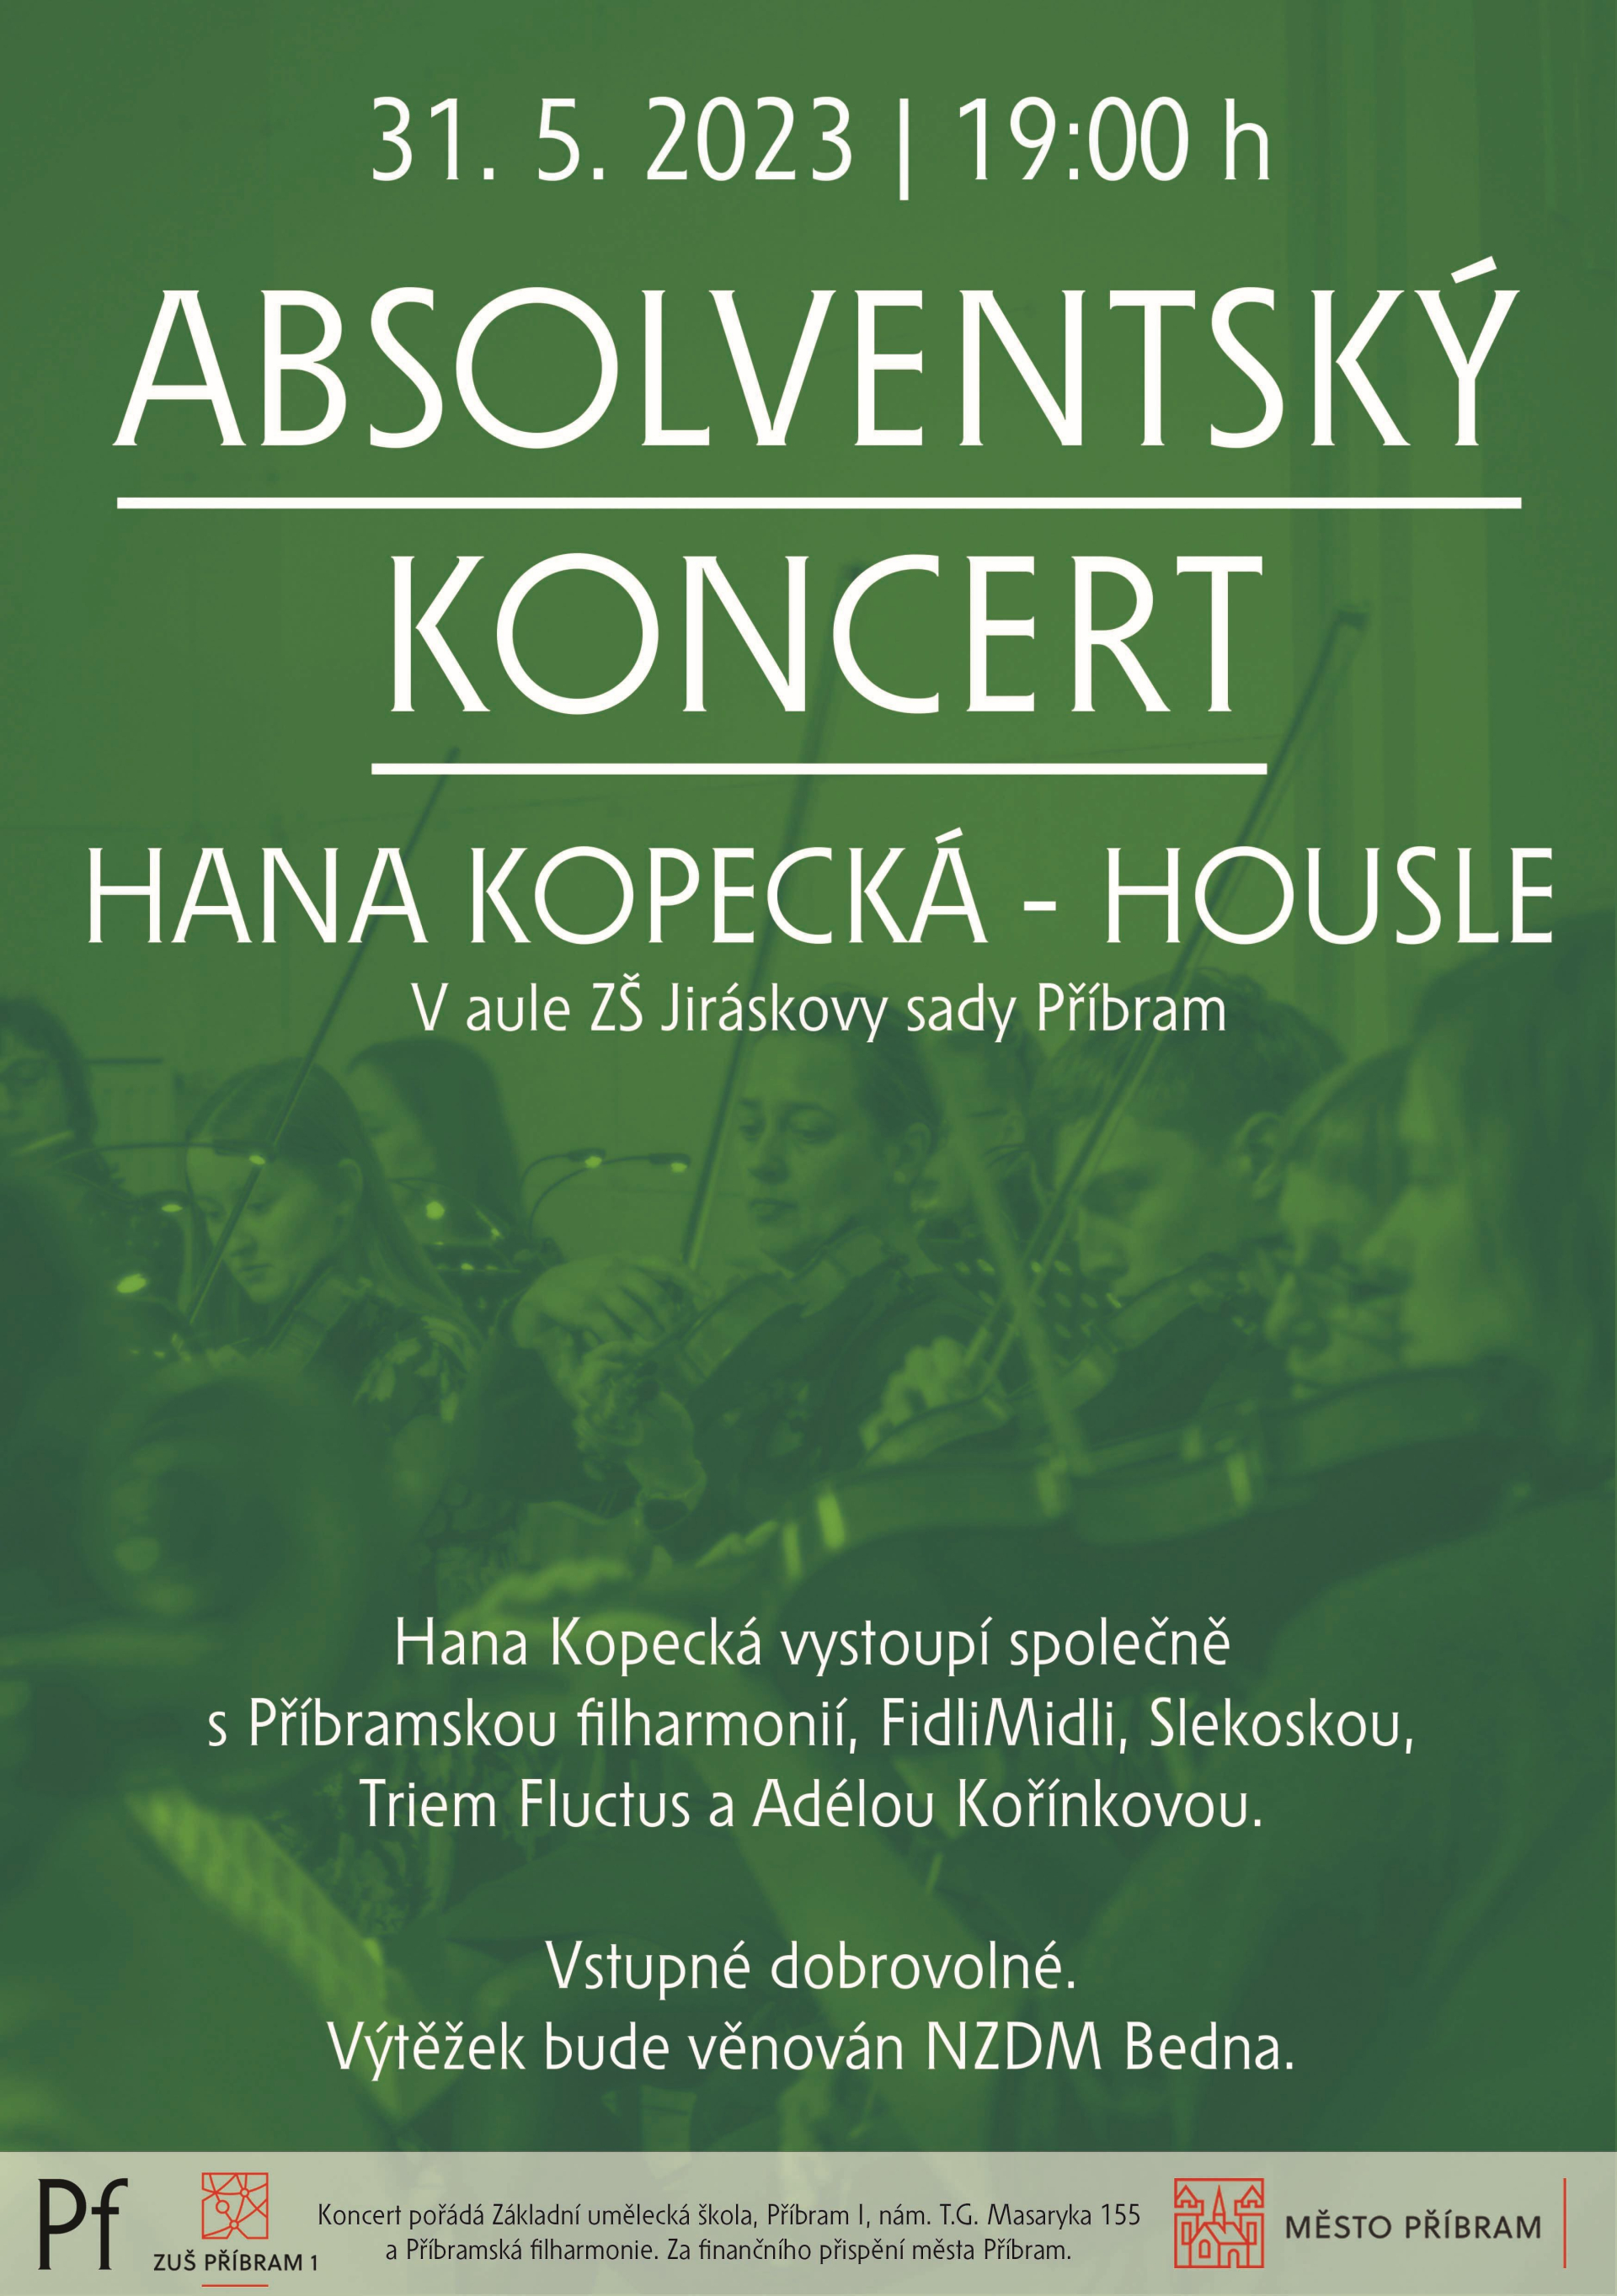 Absolventský koncert: Hana Kopecká - housle